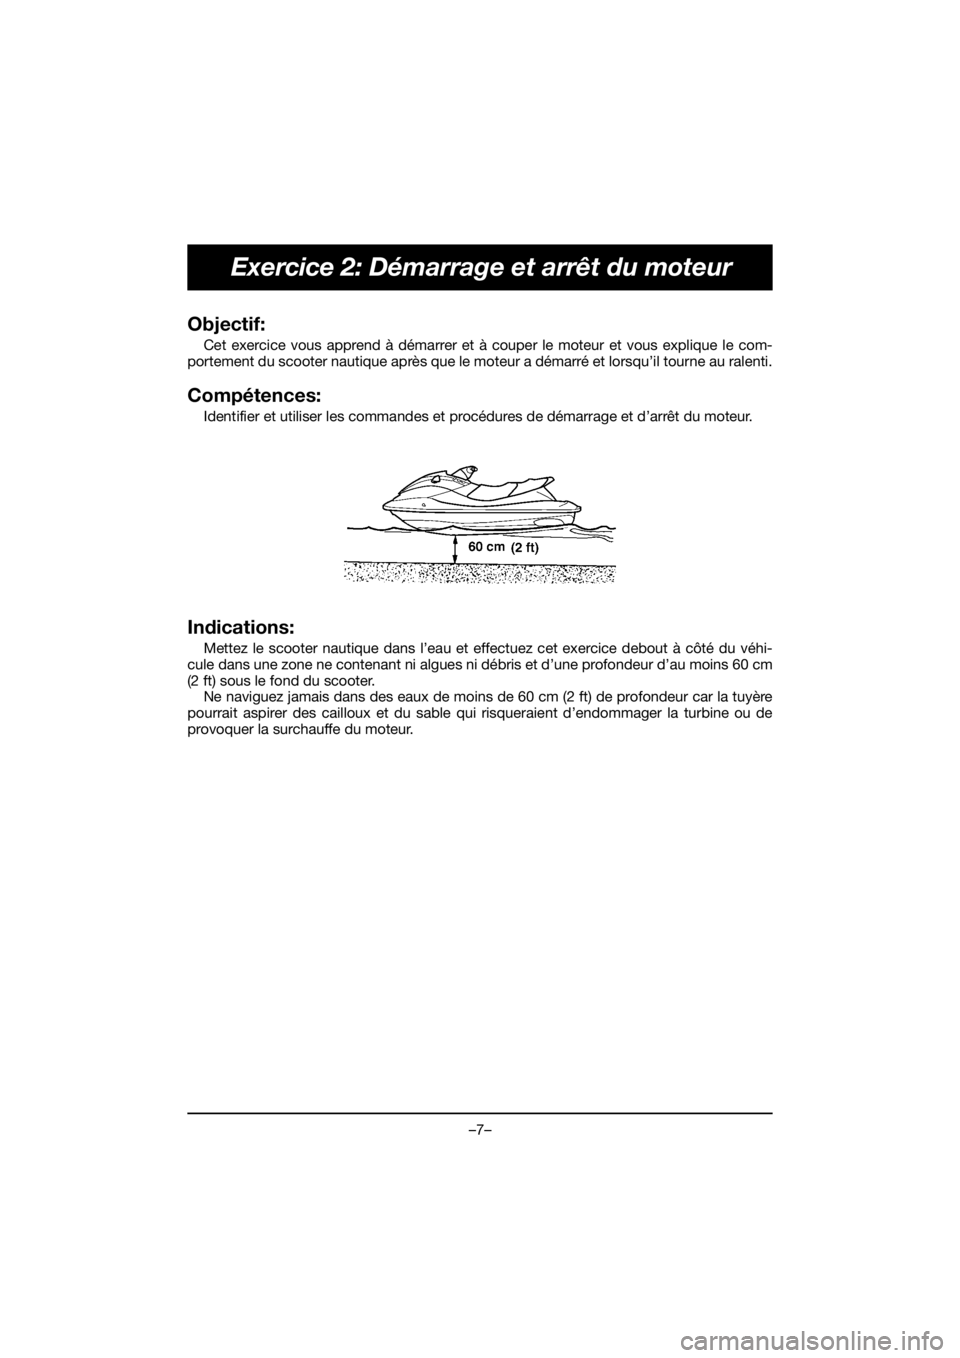 YAMAHA EXR 2020  Notices Demploi (in French) –7–
Exercice 2: Démarrage et arrêt du moteur
Objectif: 
Cet exercice vous apprend à démarrer et à couper le moteur et vous explique le com-
portement du scooter nautique après que le moteur 